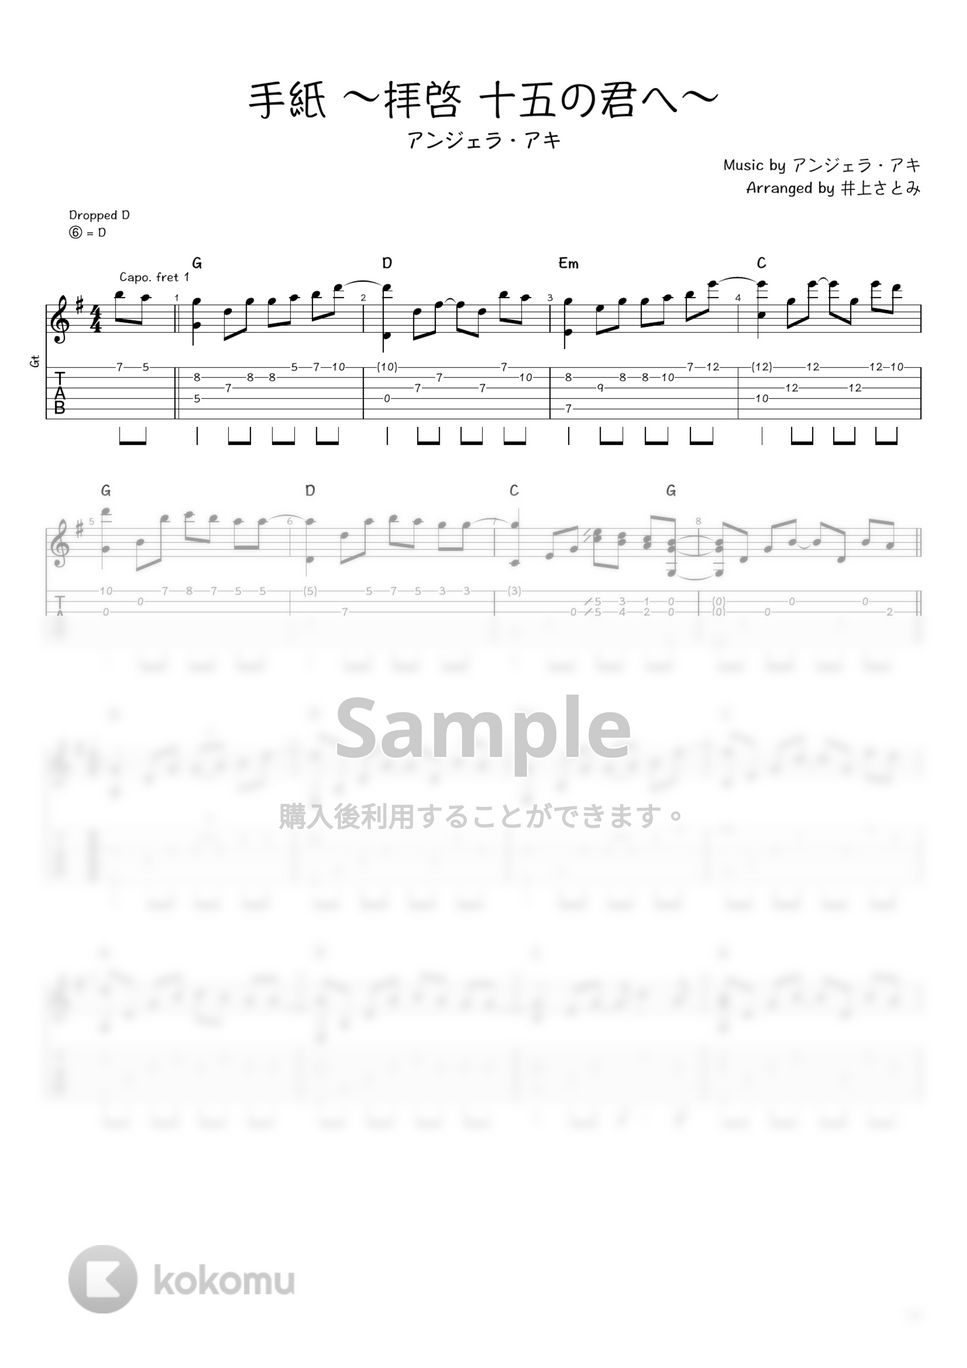 アンジェラ・アキ - 手紙 〜拝啓 十五の君へ〜 (ソロギター / タブ譜) by 井上さとみ